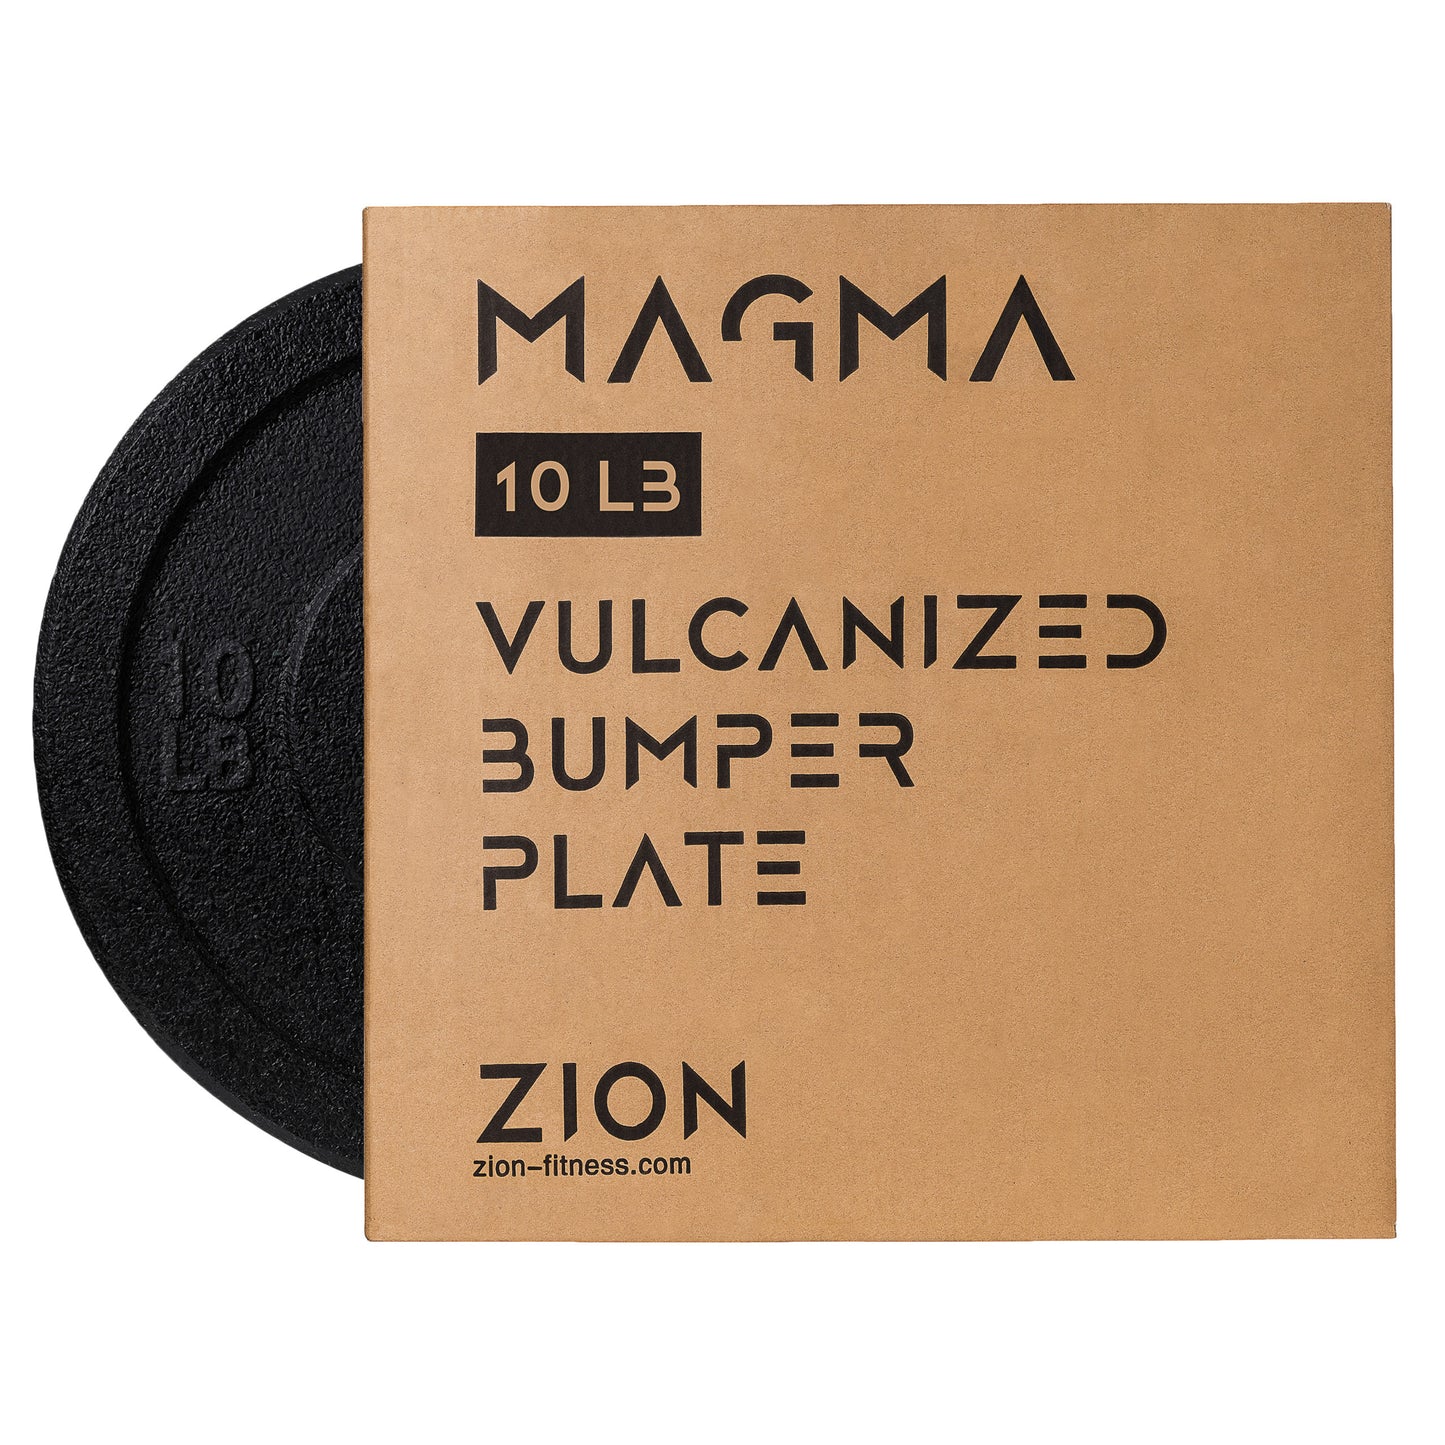 The Magma 10-45 LB Crumb Bumper Plates